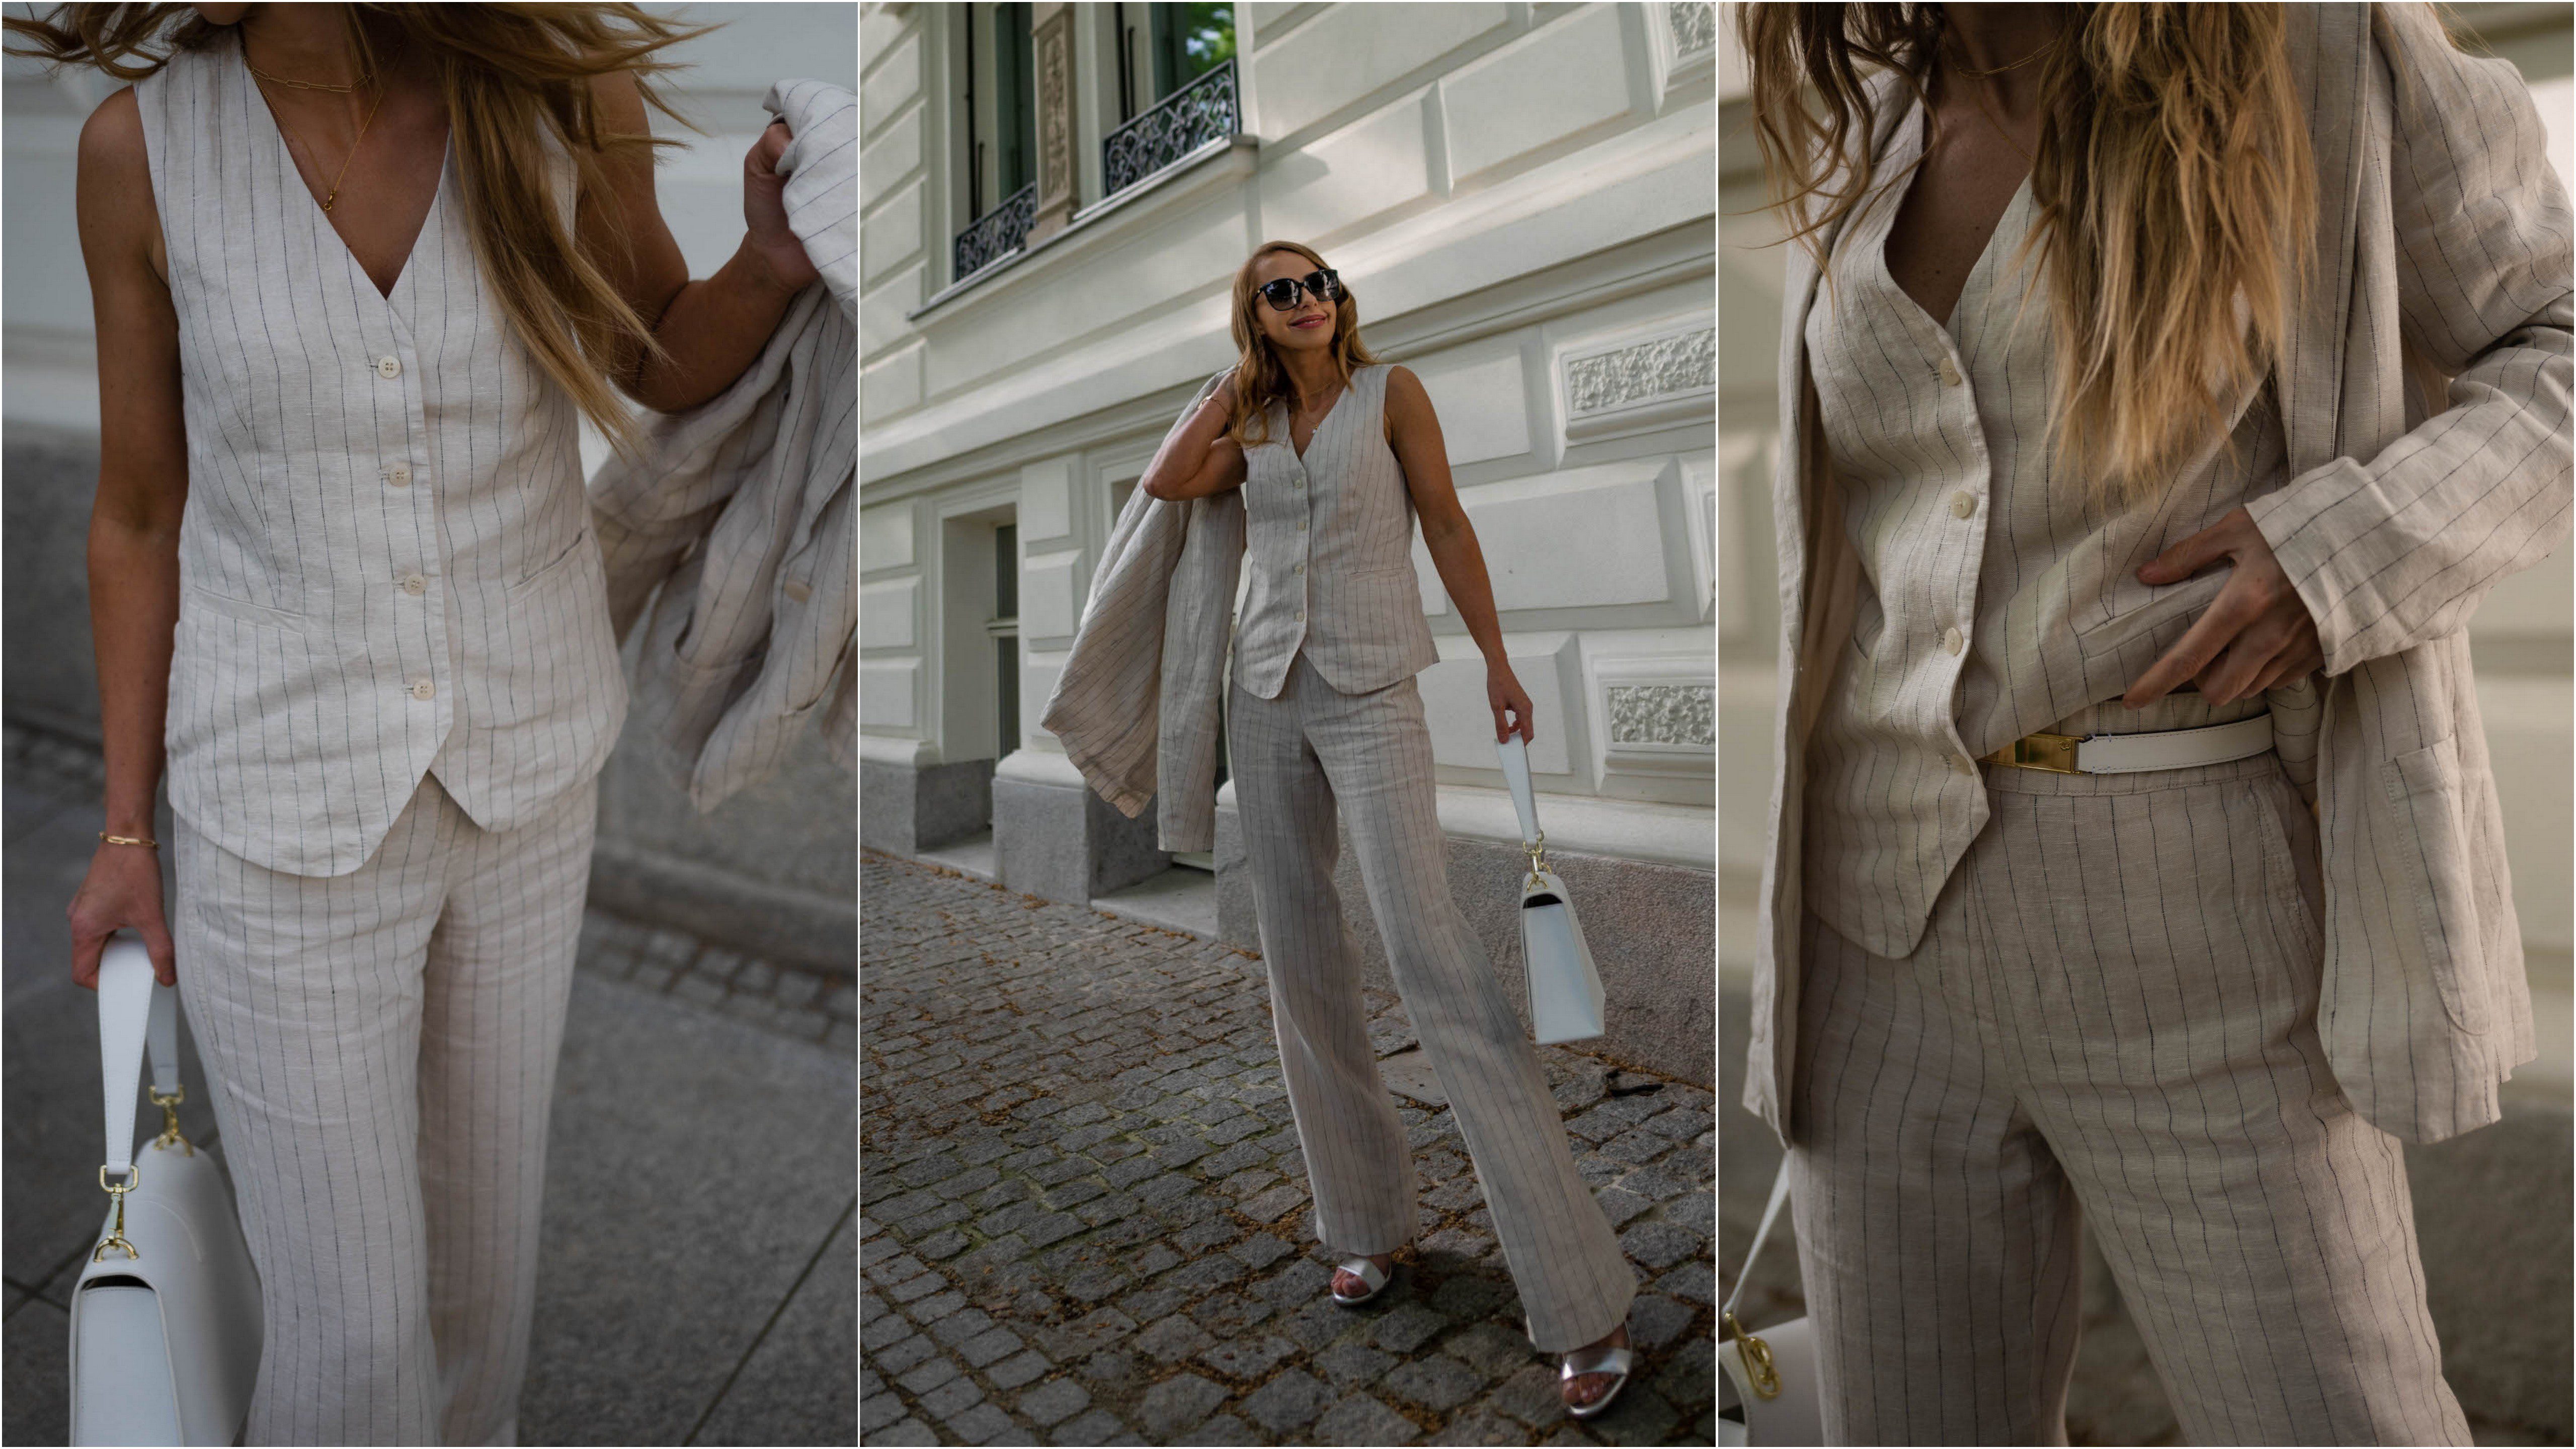 Kamila wybrała lniany garnitur w prążki z kolekcji City Culture marki Olsen.